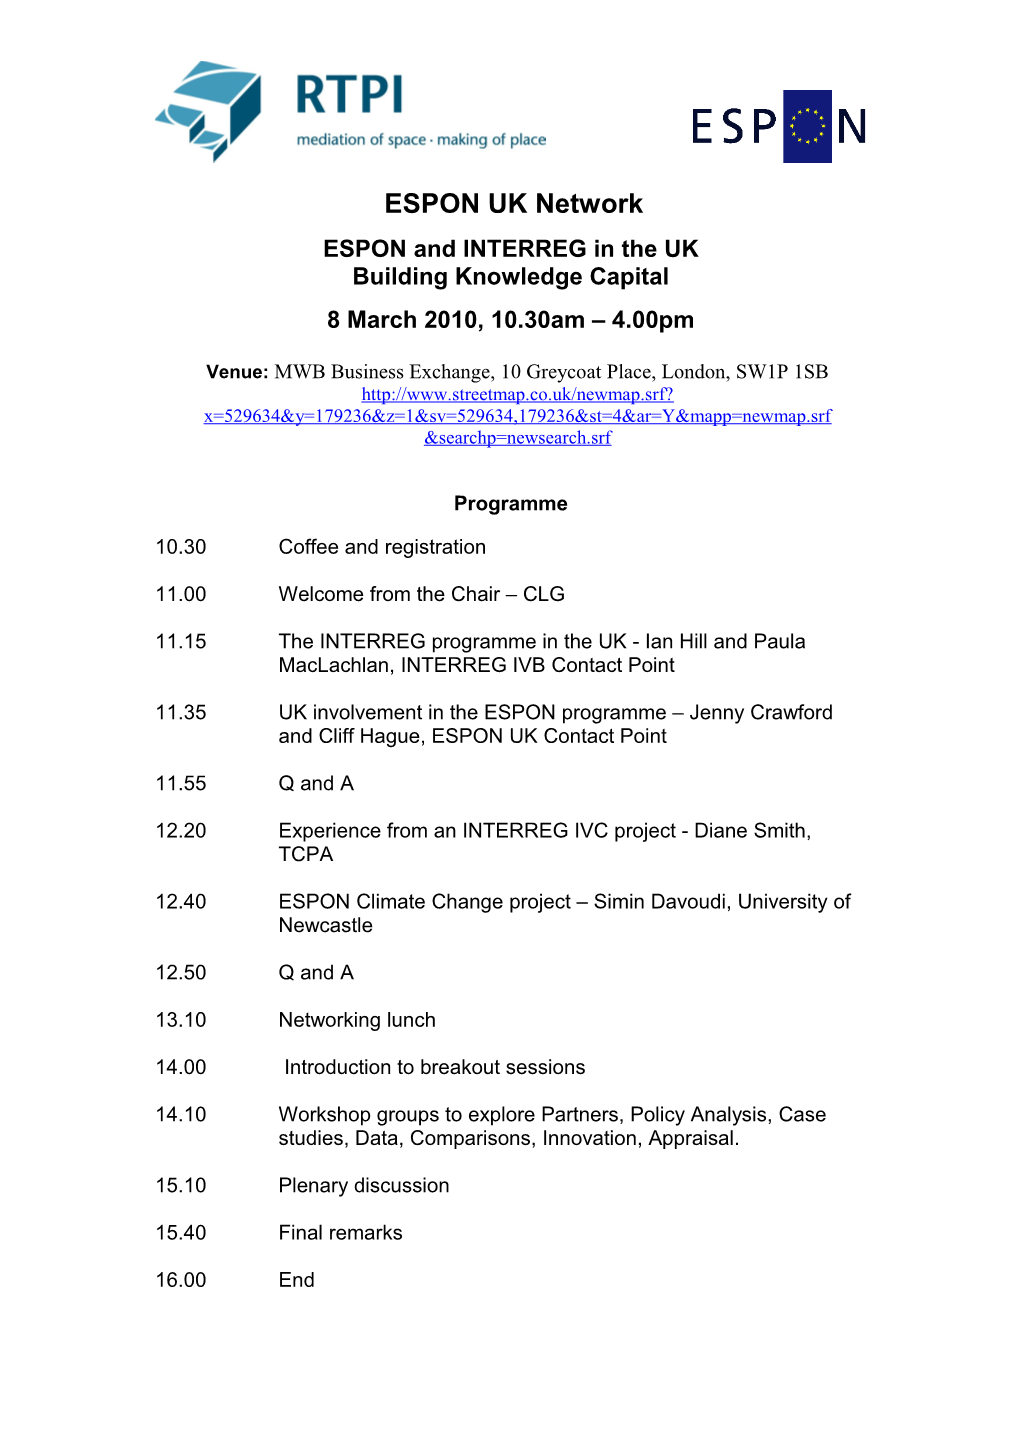 ESPON UK and RTPI Rural Planning Networks Workshop